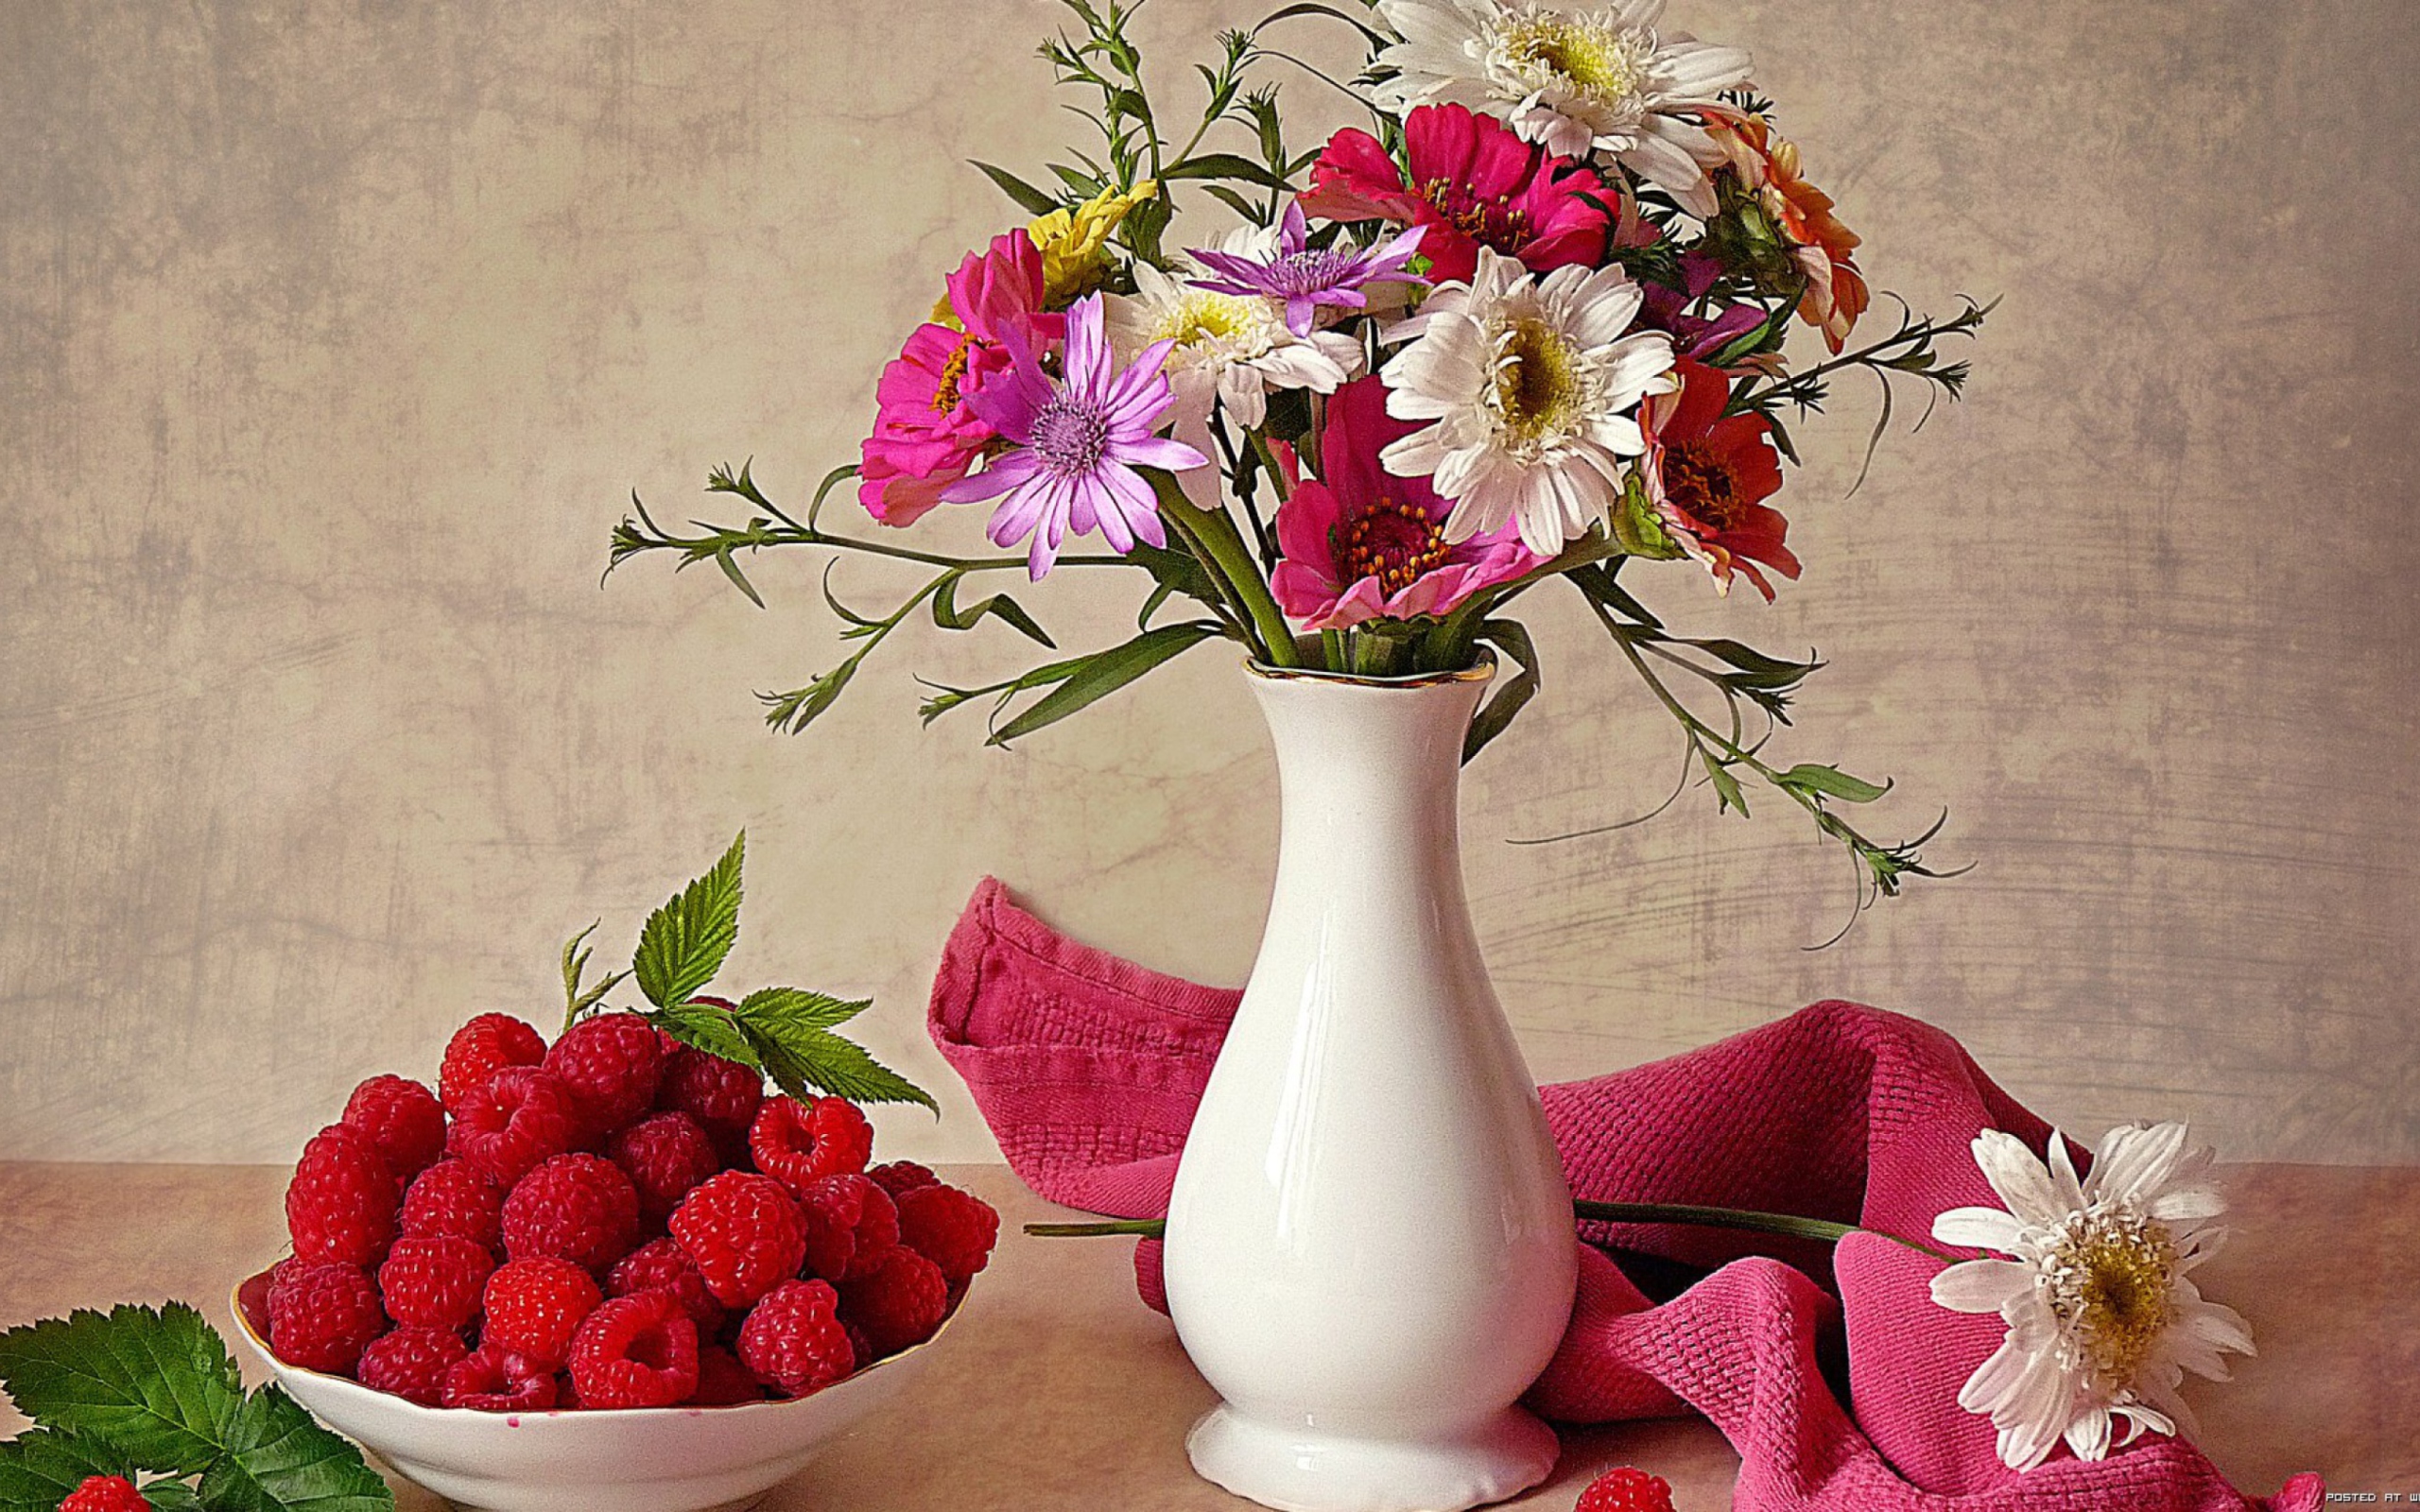 Flower Vase wallpaper 2560x1600